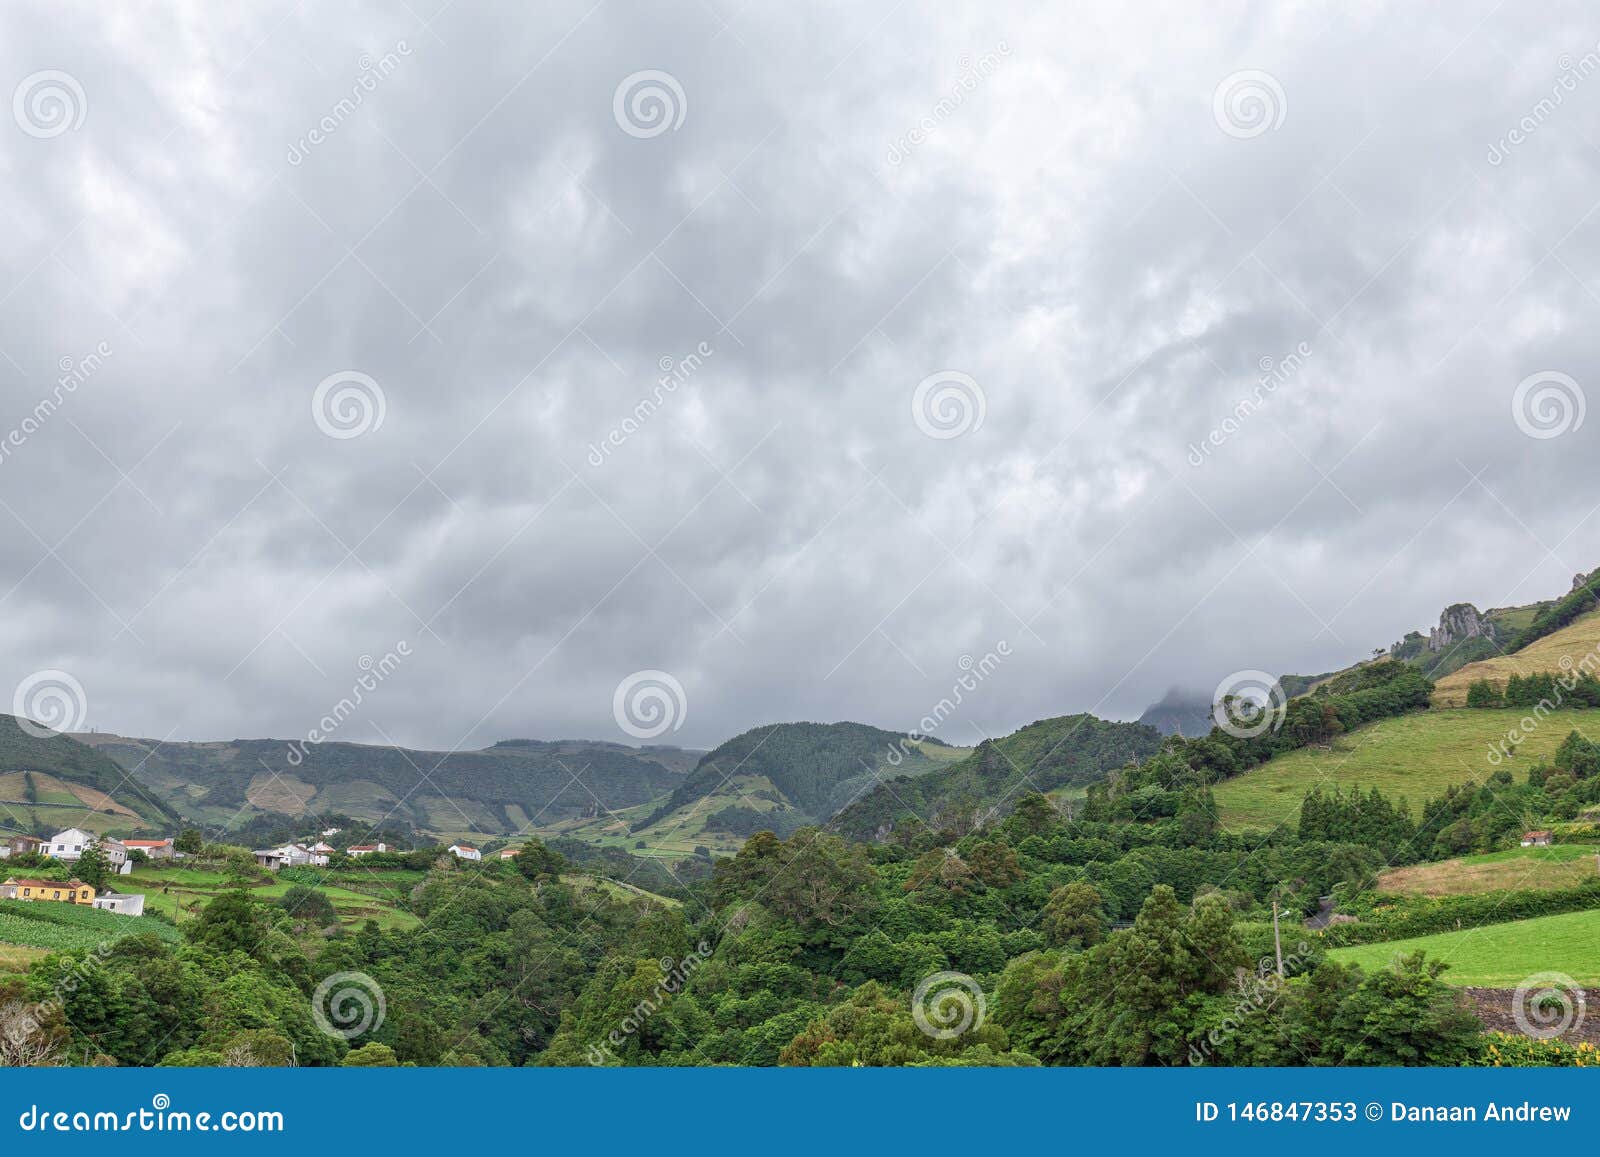 valley and fazenda de santa cruz